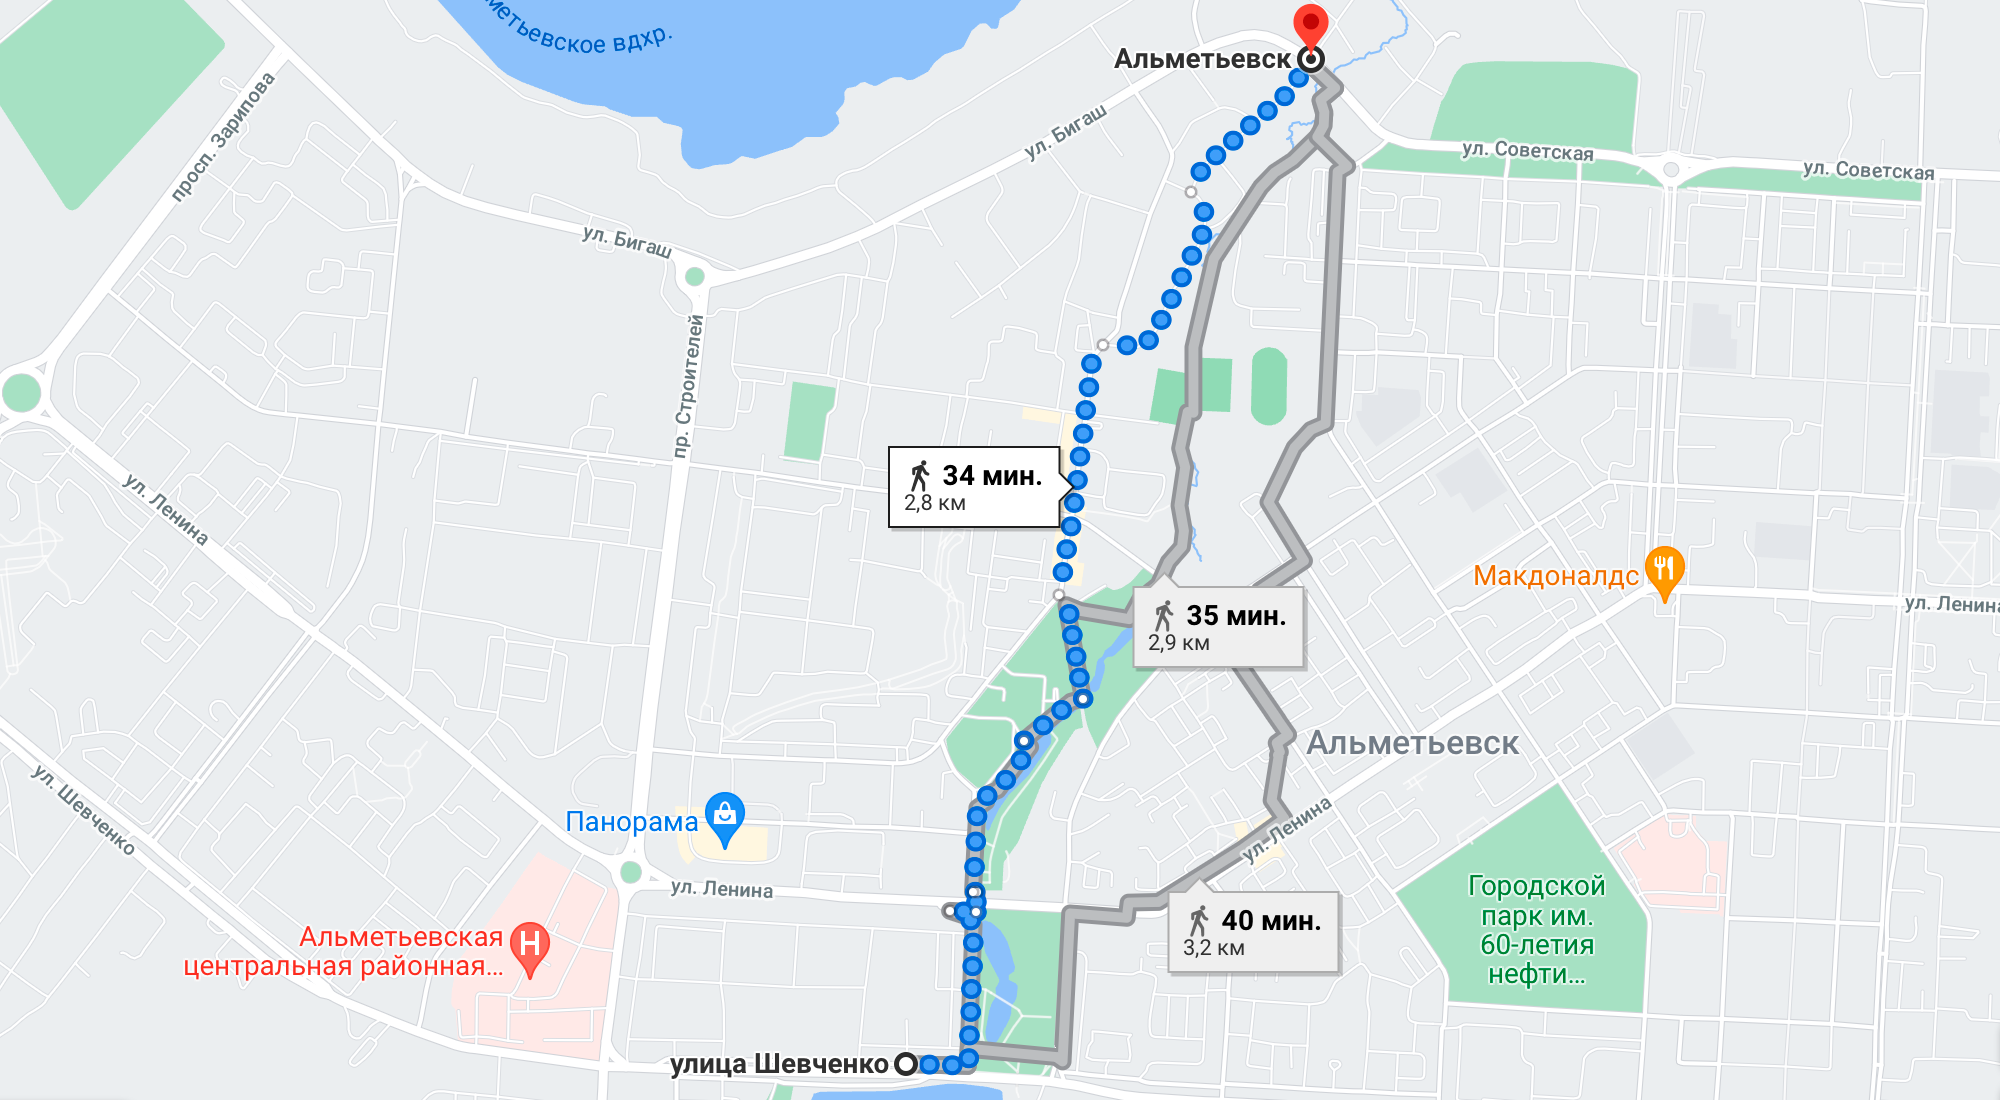 Можно пройти вдоль линии прудов 2,8 км, нигде не пересекая проезжую часть: через улицу Ленина проложили подземный переход